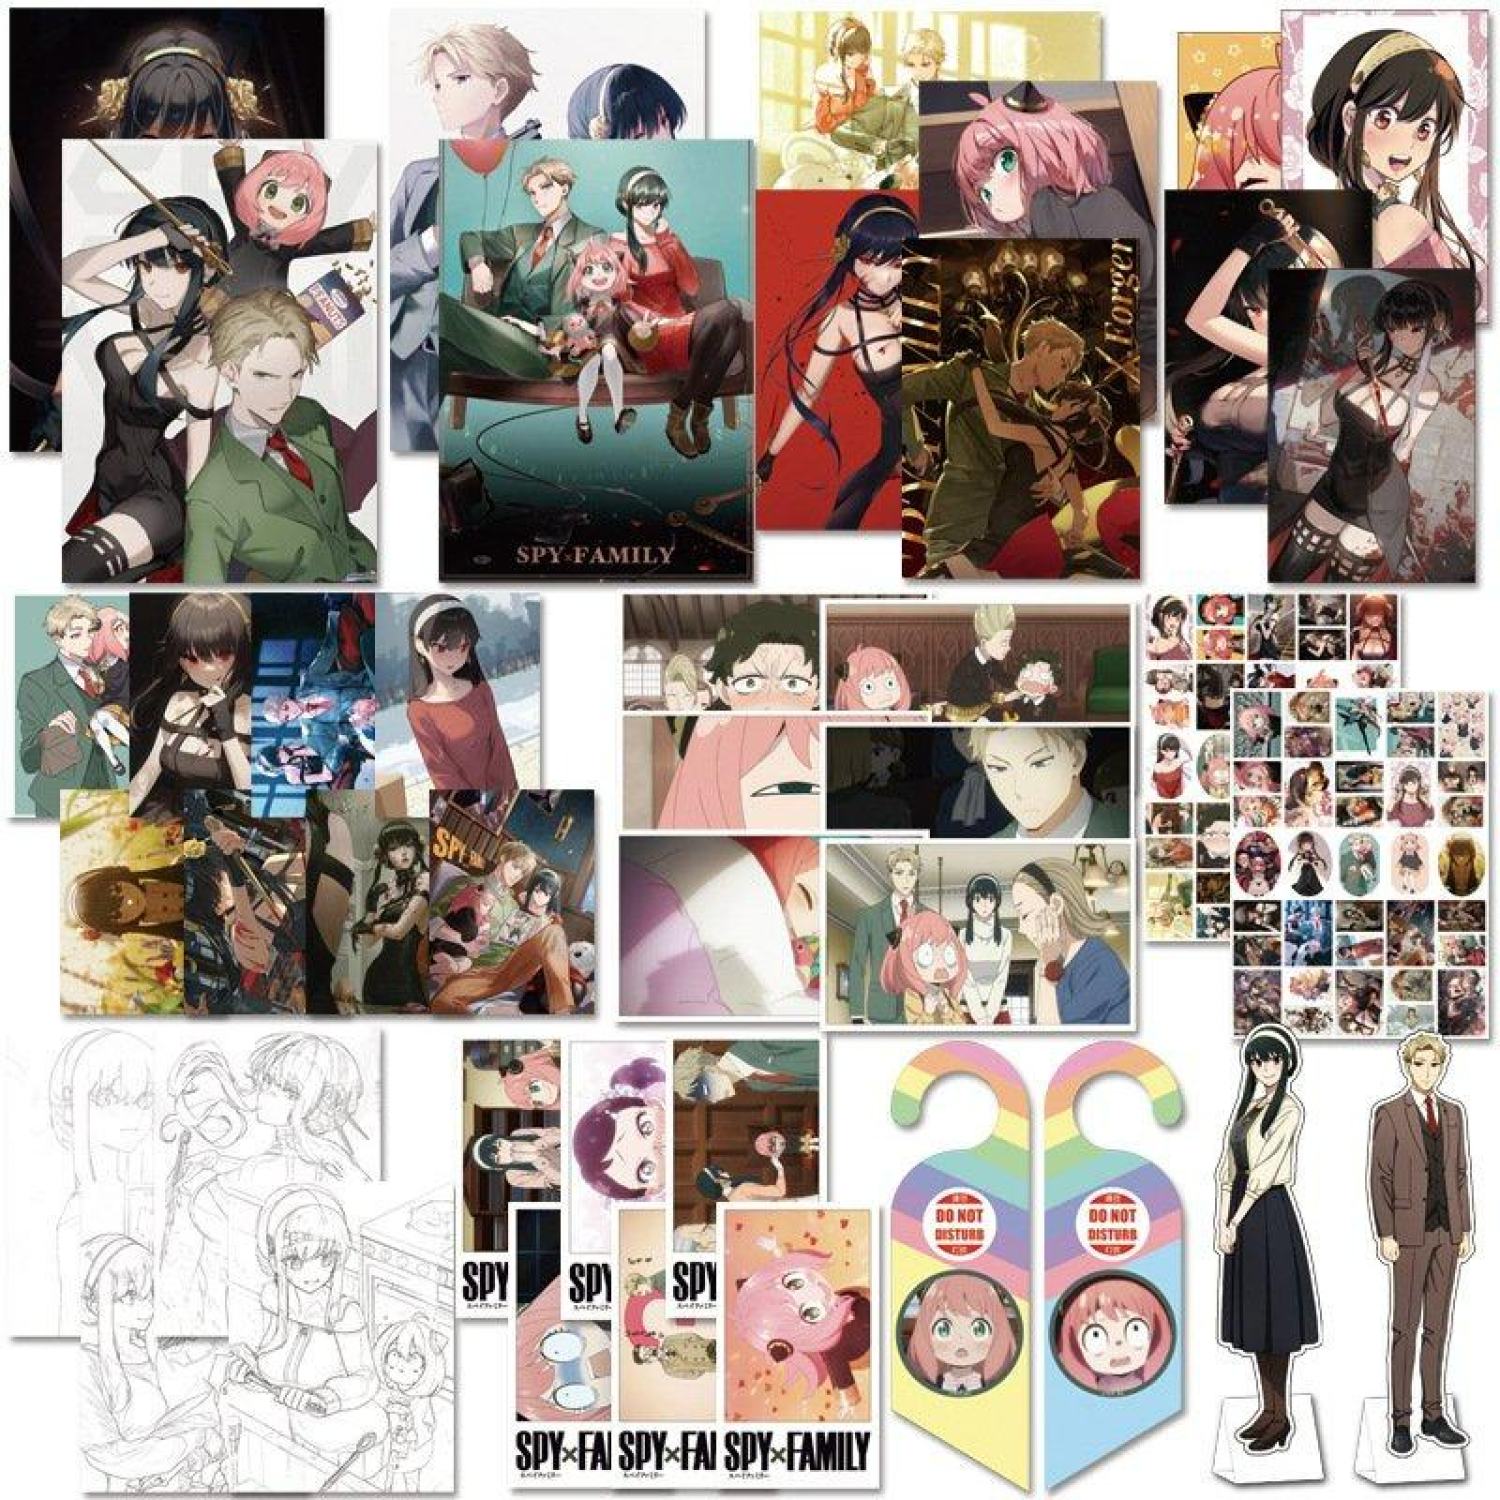 Combo quà tặng Spy x Family GIA ĐÌNH Đ IỆP V IÊN album anime manga chibi tranh ảnh postcard bookmark